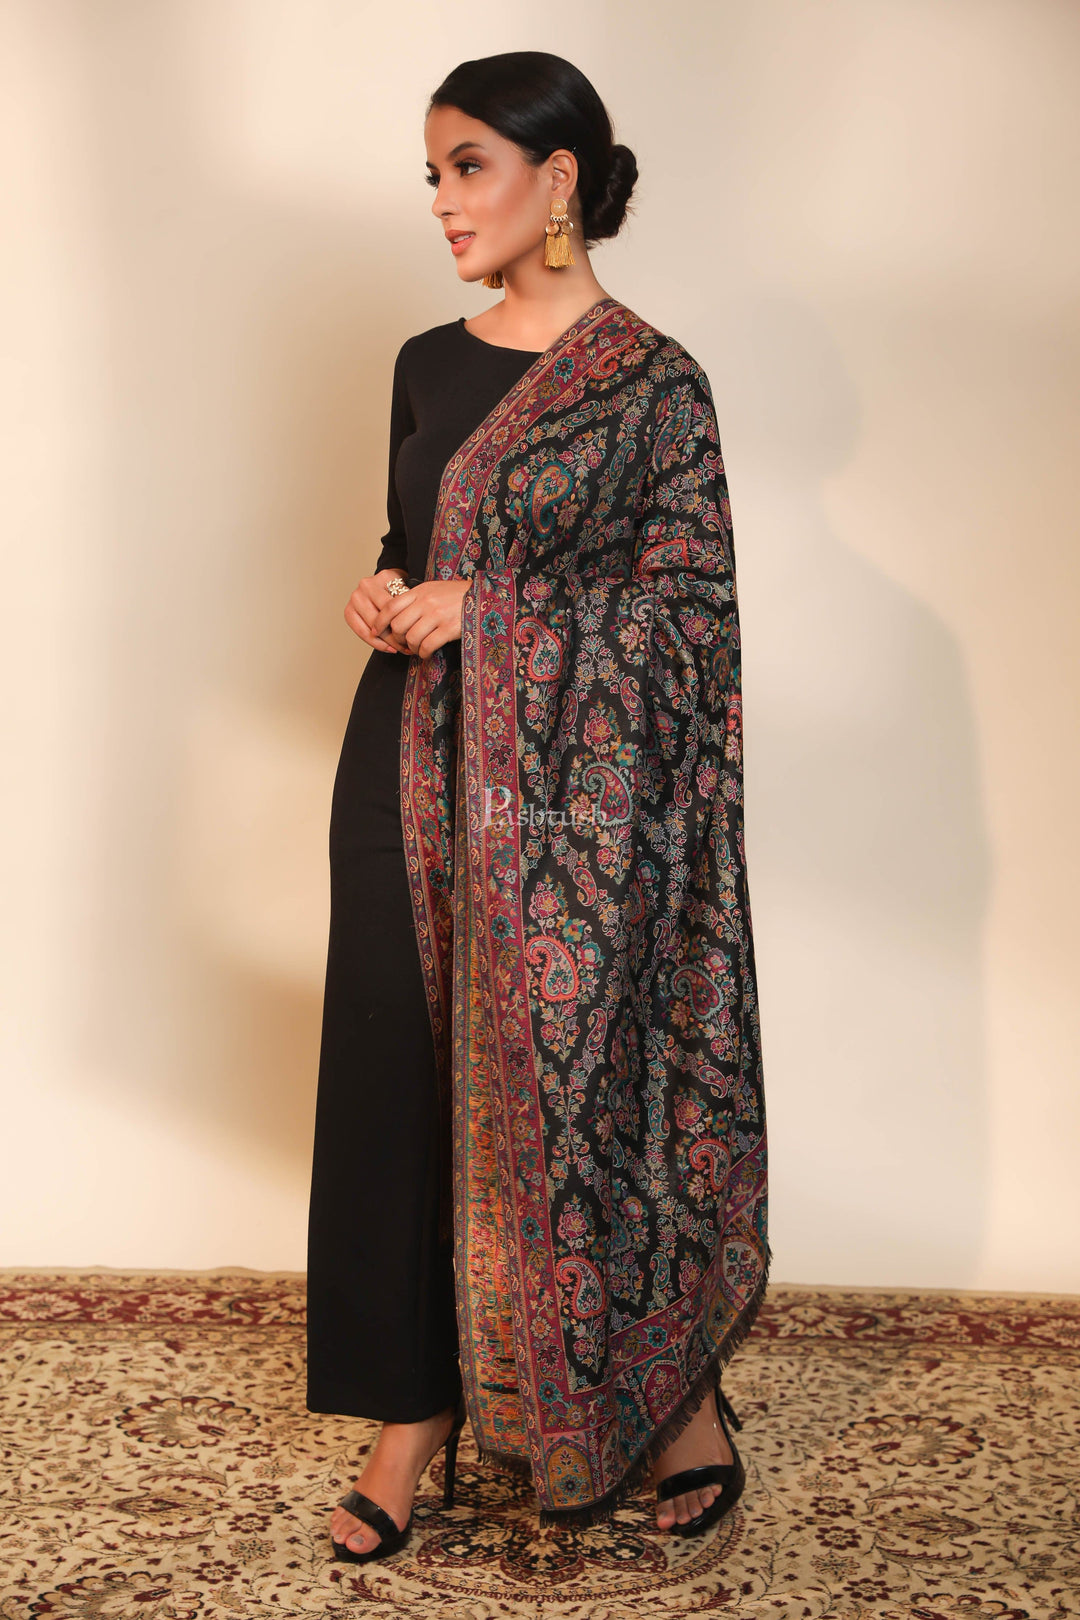 https://pashtush.in/cdn/shop/products/pashtush-pashmina-pashtush-women-faux-pashmina-shawl-ethnic-weave-design-multi-color-30759084720182.jpg?v=1651154294&width=1080